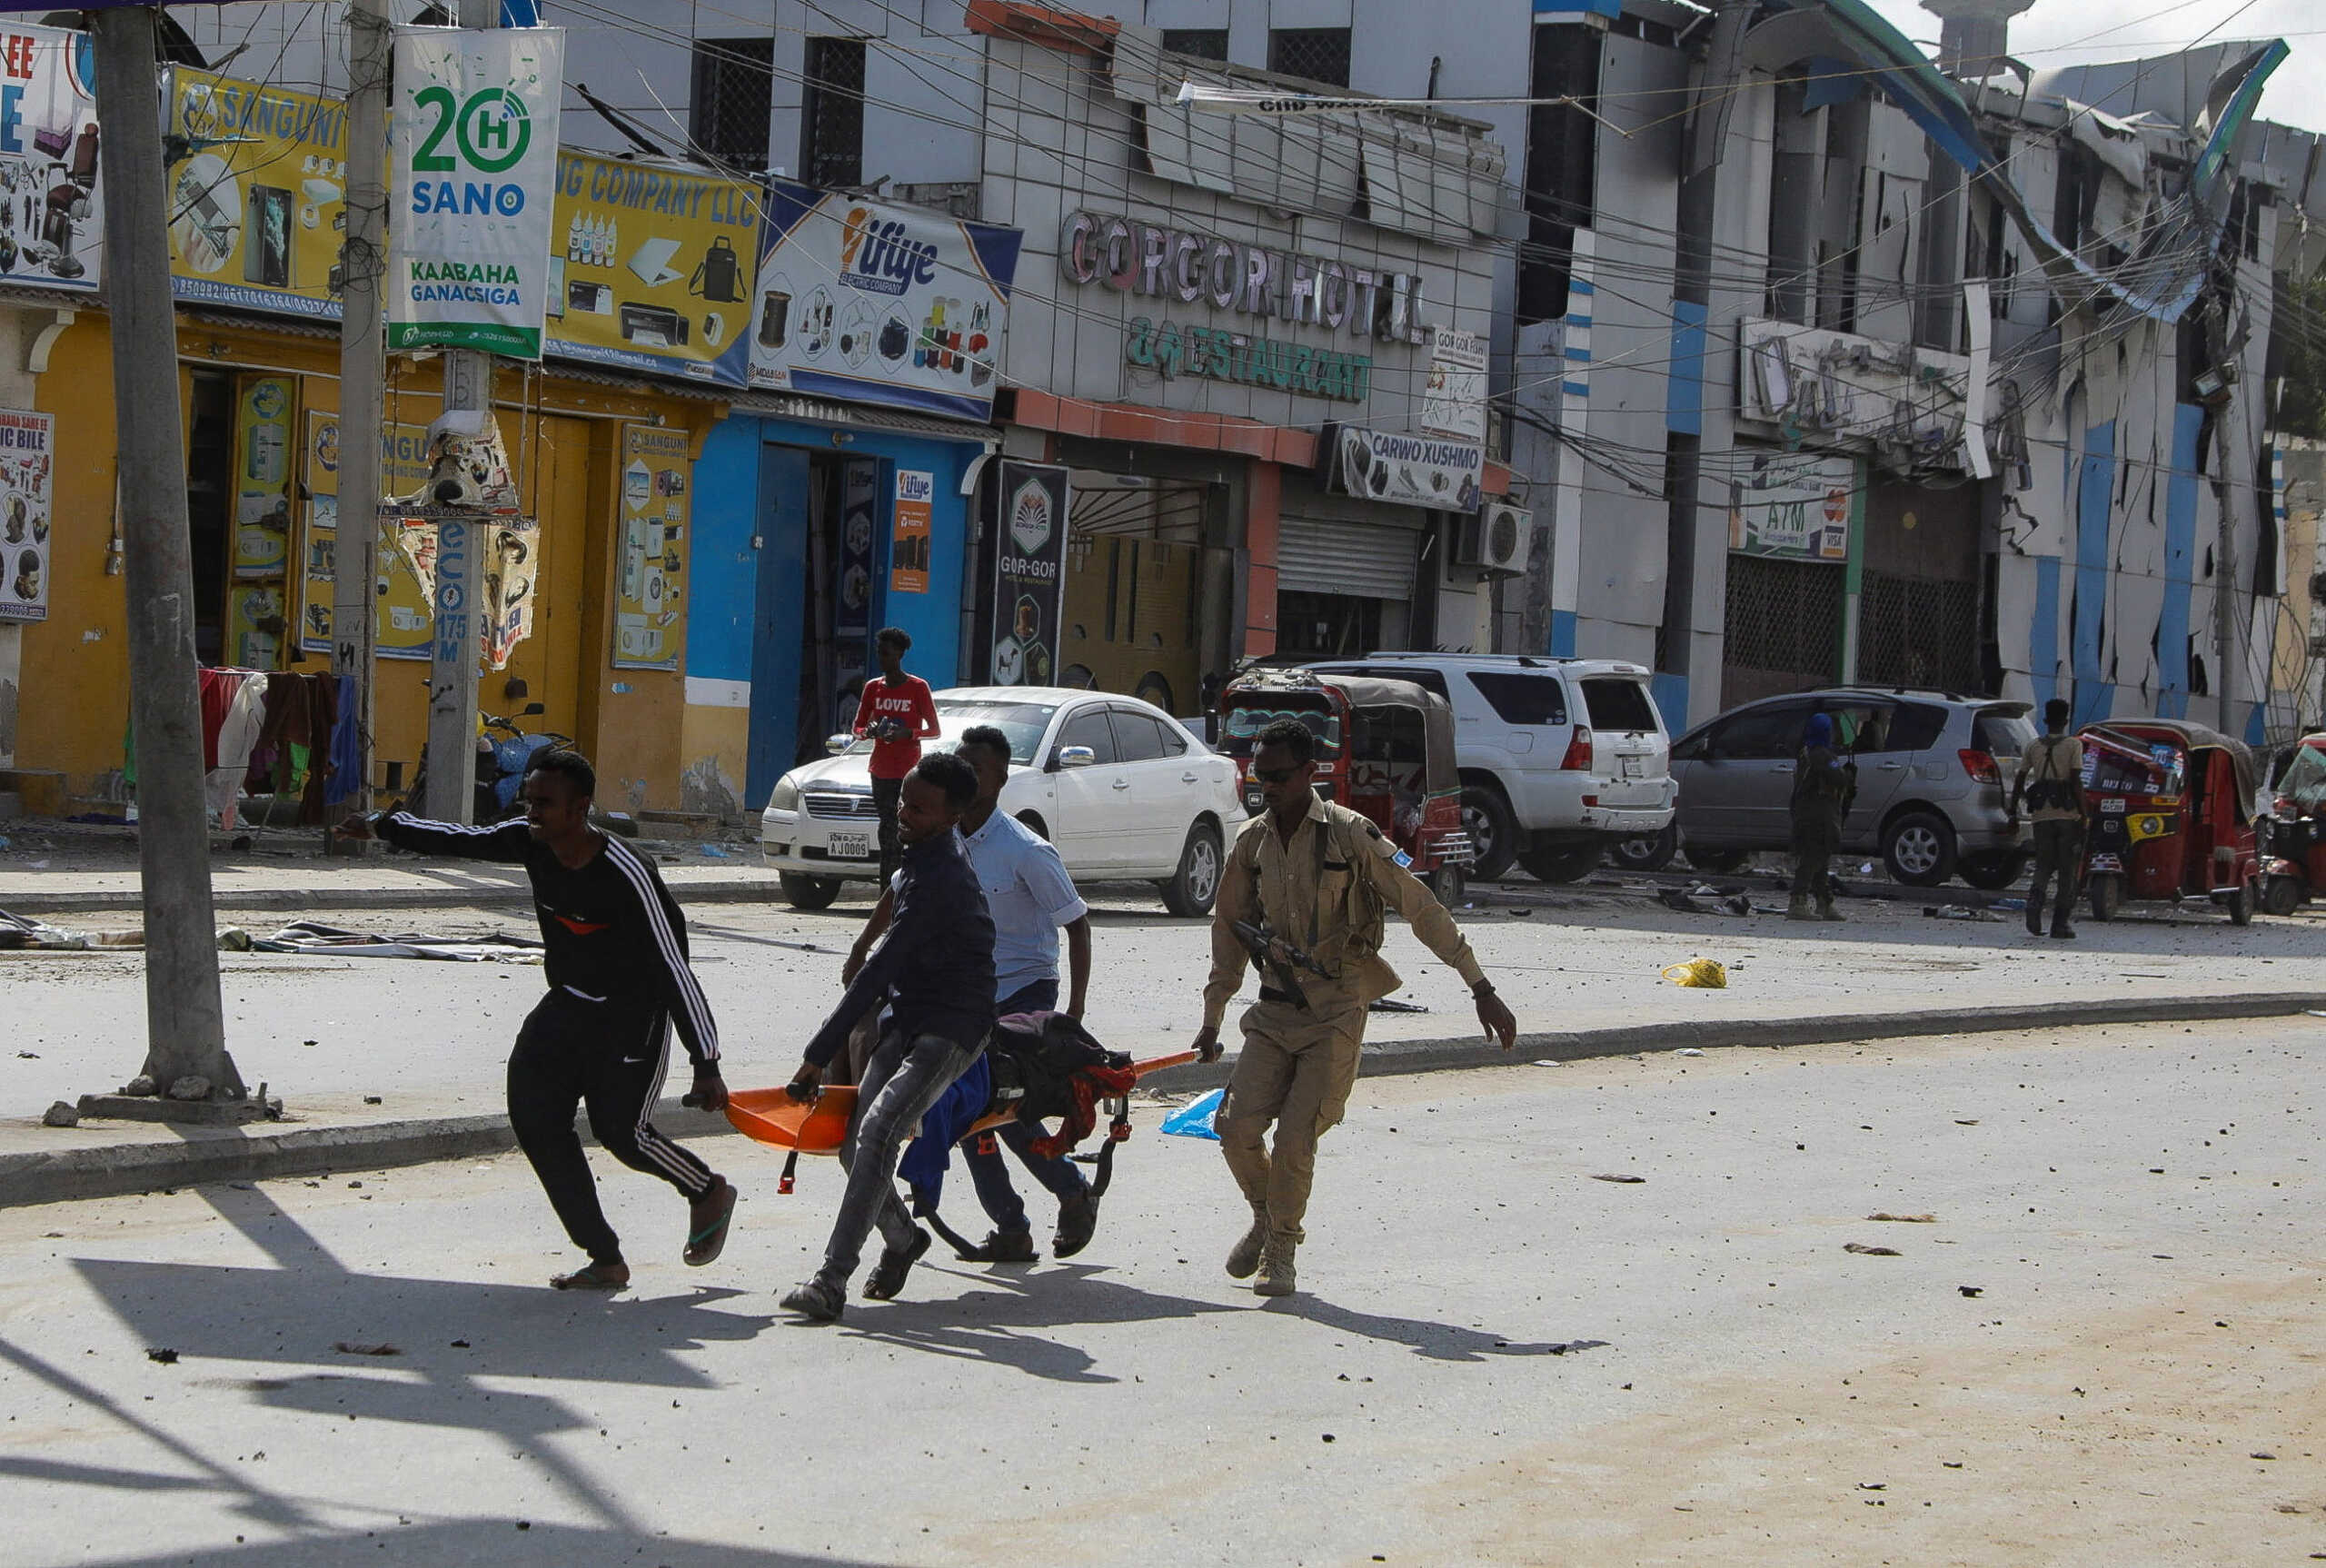 Σομαλία: 29 νεκροί από διπλή βομβιστική επίθεση αυτοκτονίας